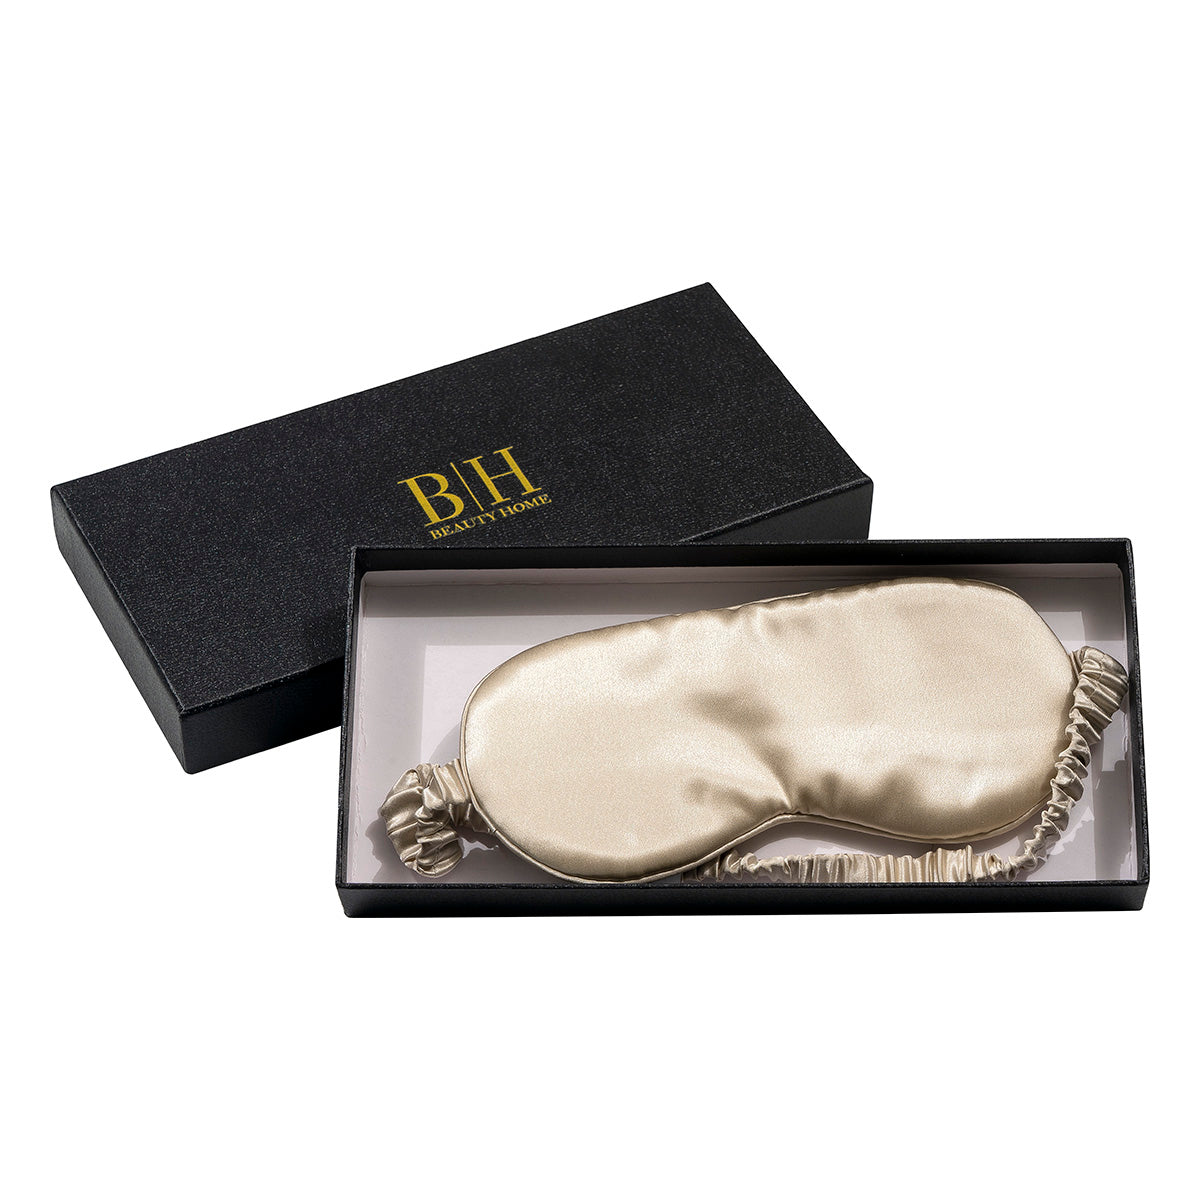 Μεταξωτή μάσκα ύπνου σε κουτί δώρου Art 12167 Φυστικί Beauty Home από την εταιρεία Beauty Home